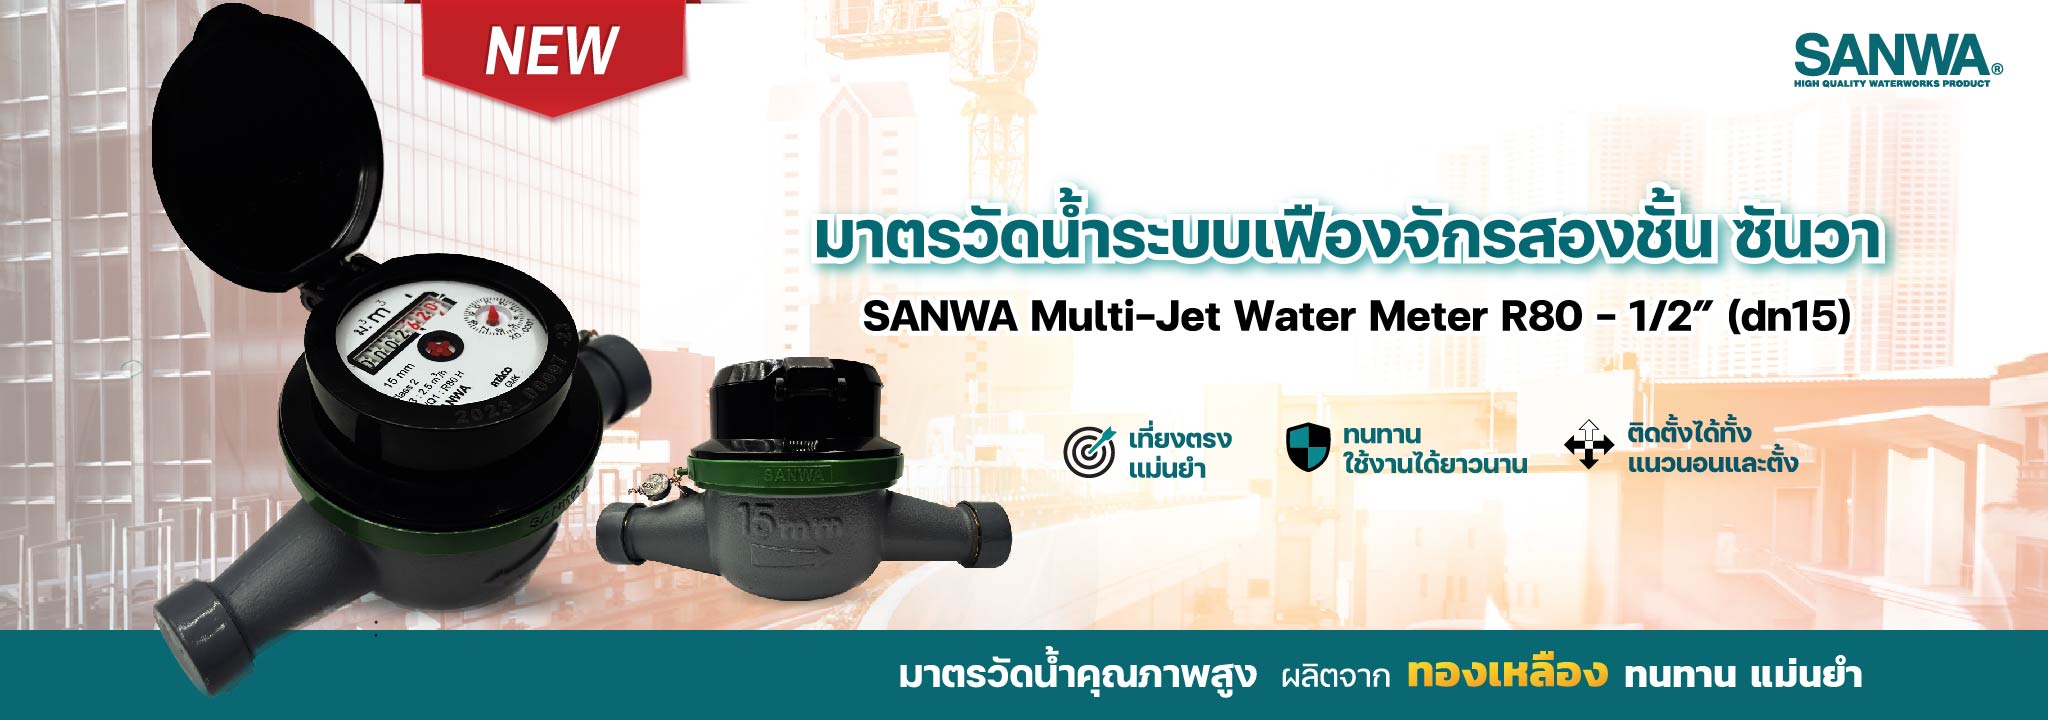 water meter sanwa GMK มิเตอร์น้ำ มาตรวัดน้ำ